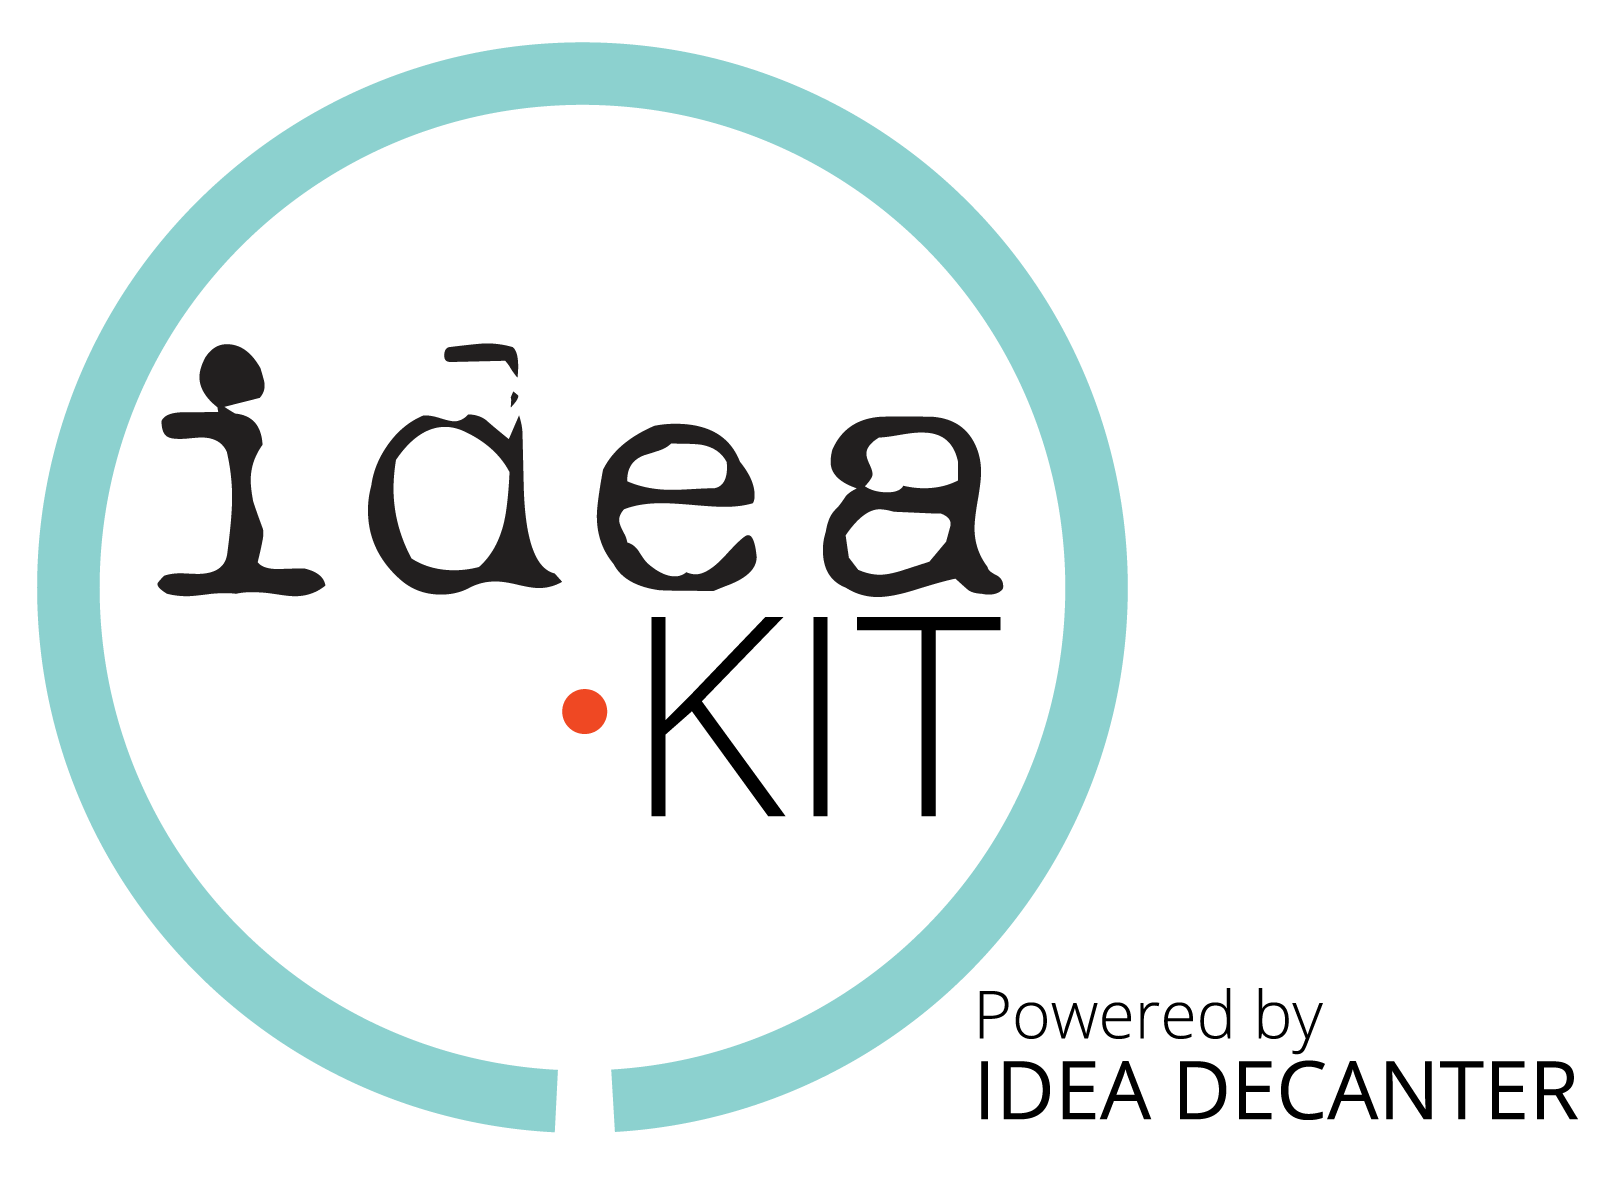 Idea Decanter logo